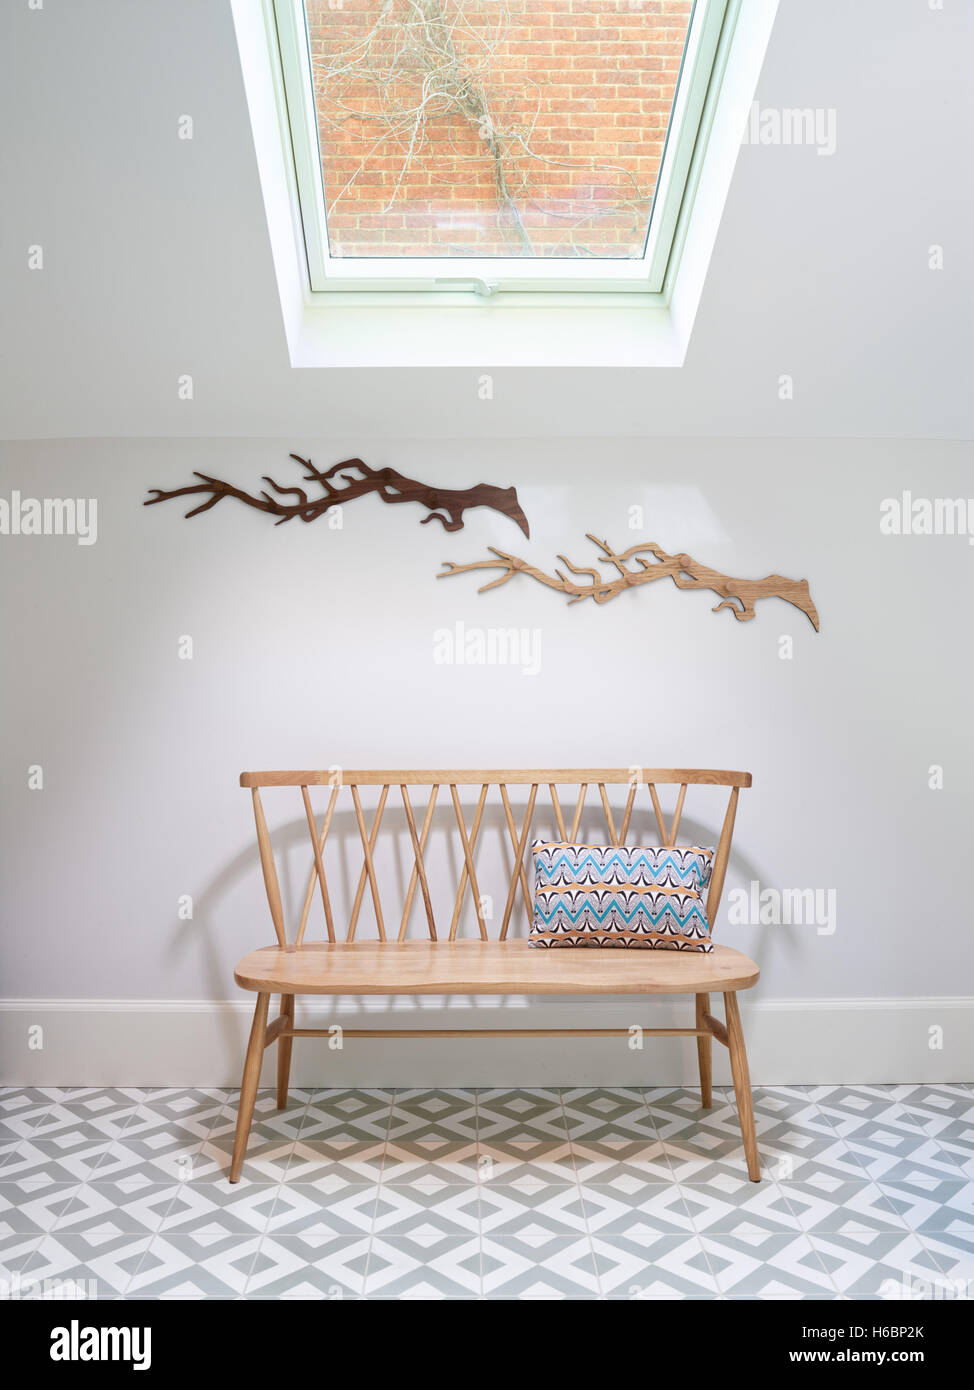 Eine einfache Sitzbank nordischen Stil in einem kleinen Atrium, das natürliche Tageslicht von oben über einen Stil Velux Fenster, UK Stockfoto